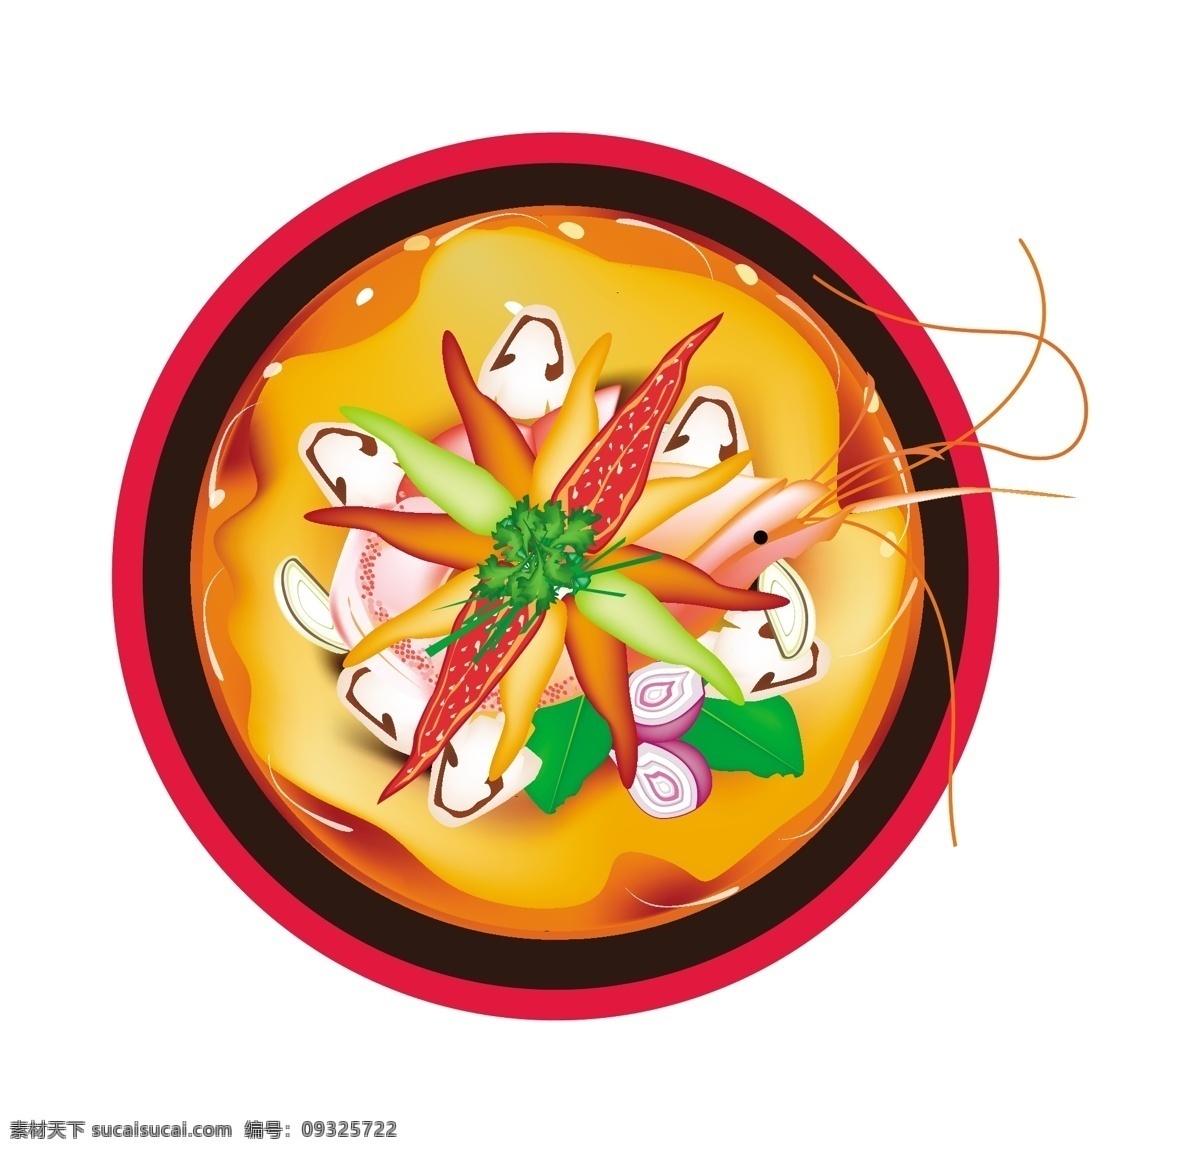 卡通 手绘 美味 食物 矢量 海鲜 龙虾 砂锅 高汤 中式 日式 鸡蛋 面条 动漫 菜肴